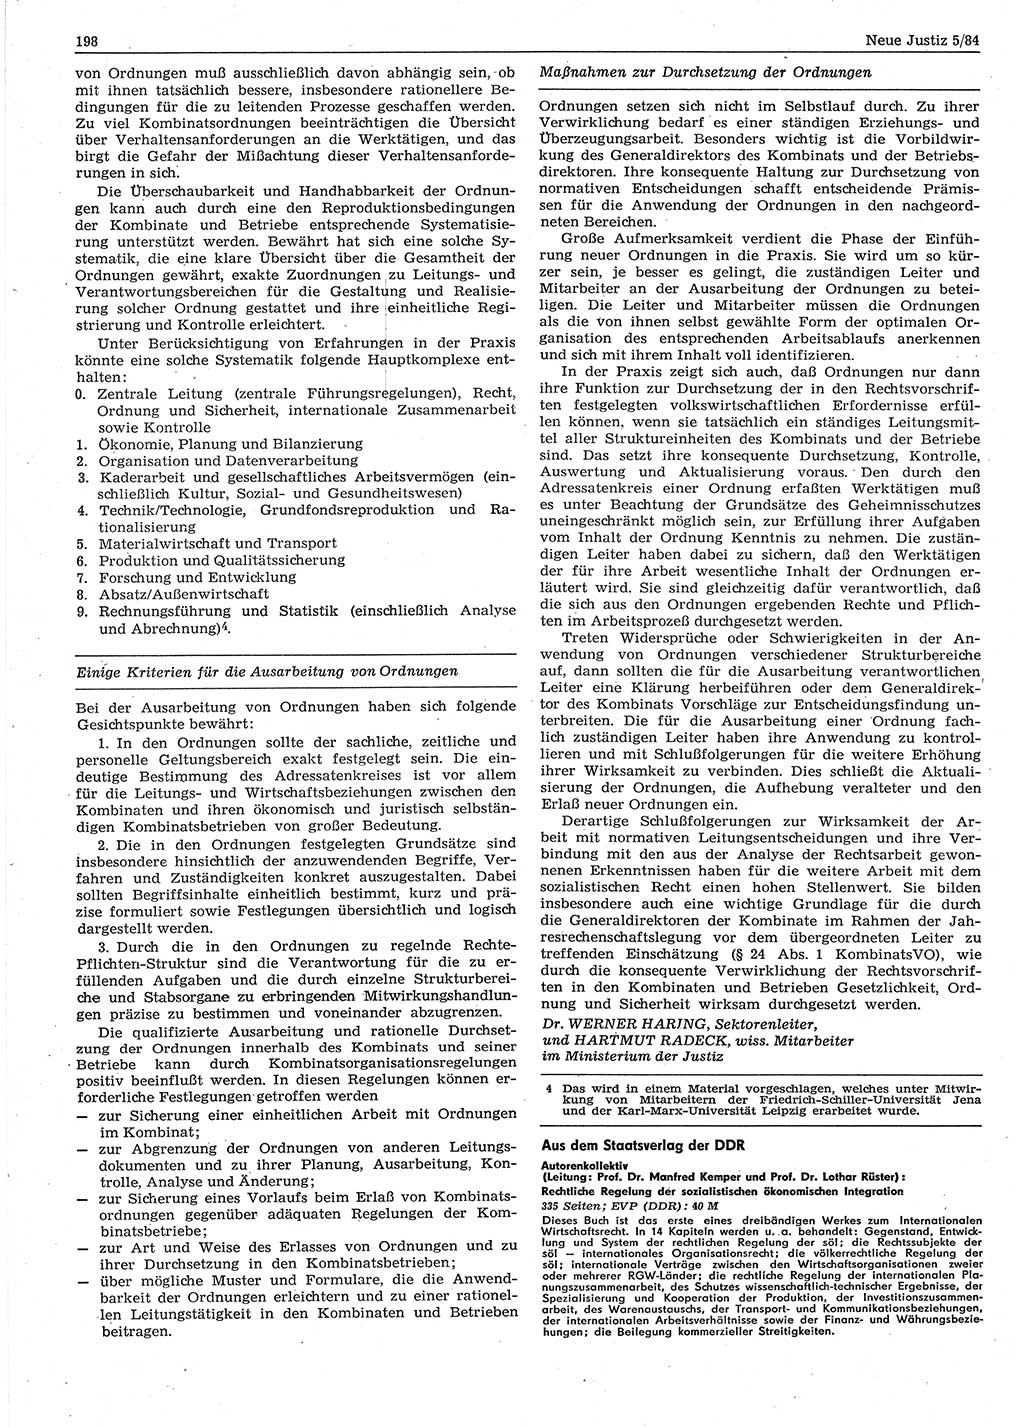 Neue Justiz (NJ), Zeitschrift für sozialistisches Recht und Gesetzlichkeit [Deutsche Demokratische Republik (DDR)], 38. Jahrgang 1984, Seite 198 (NJ DDR 1984, S. 198)